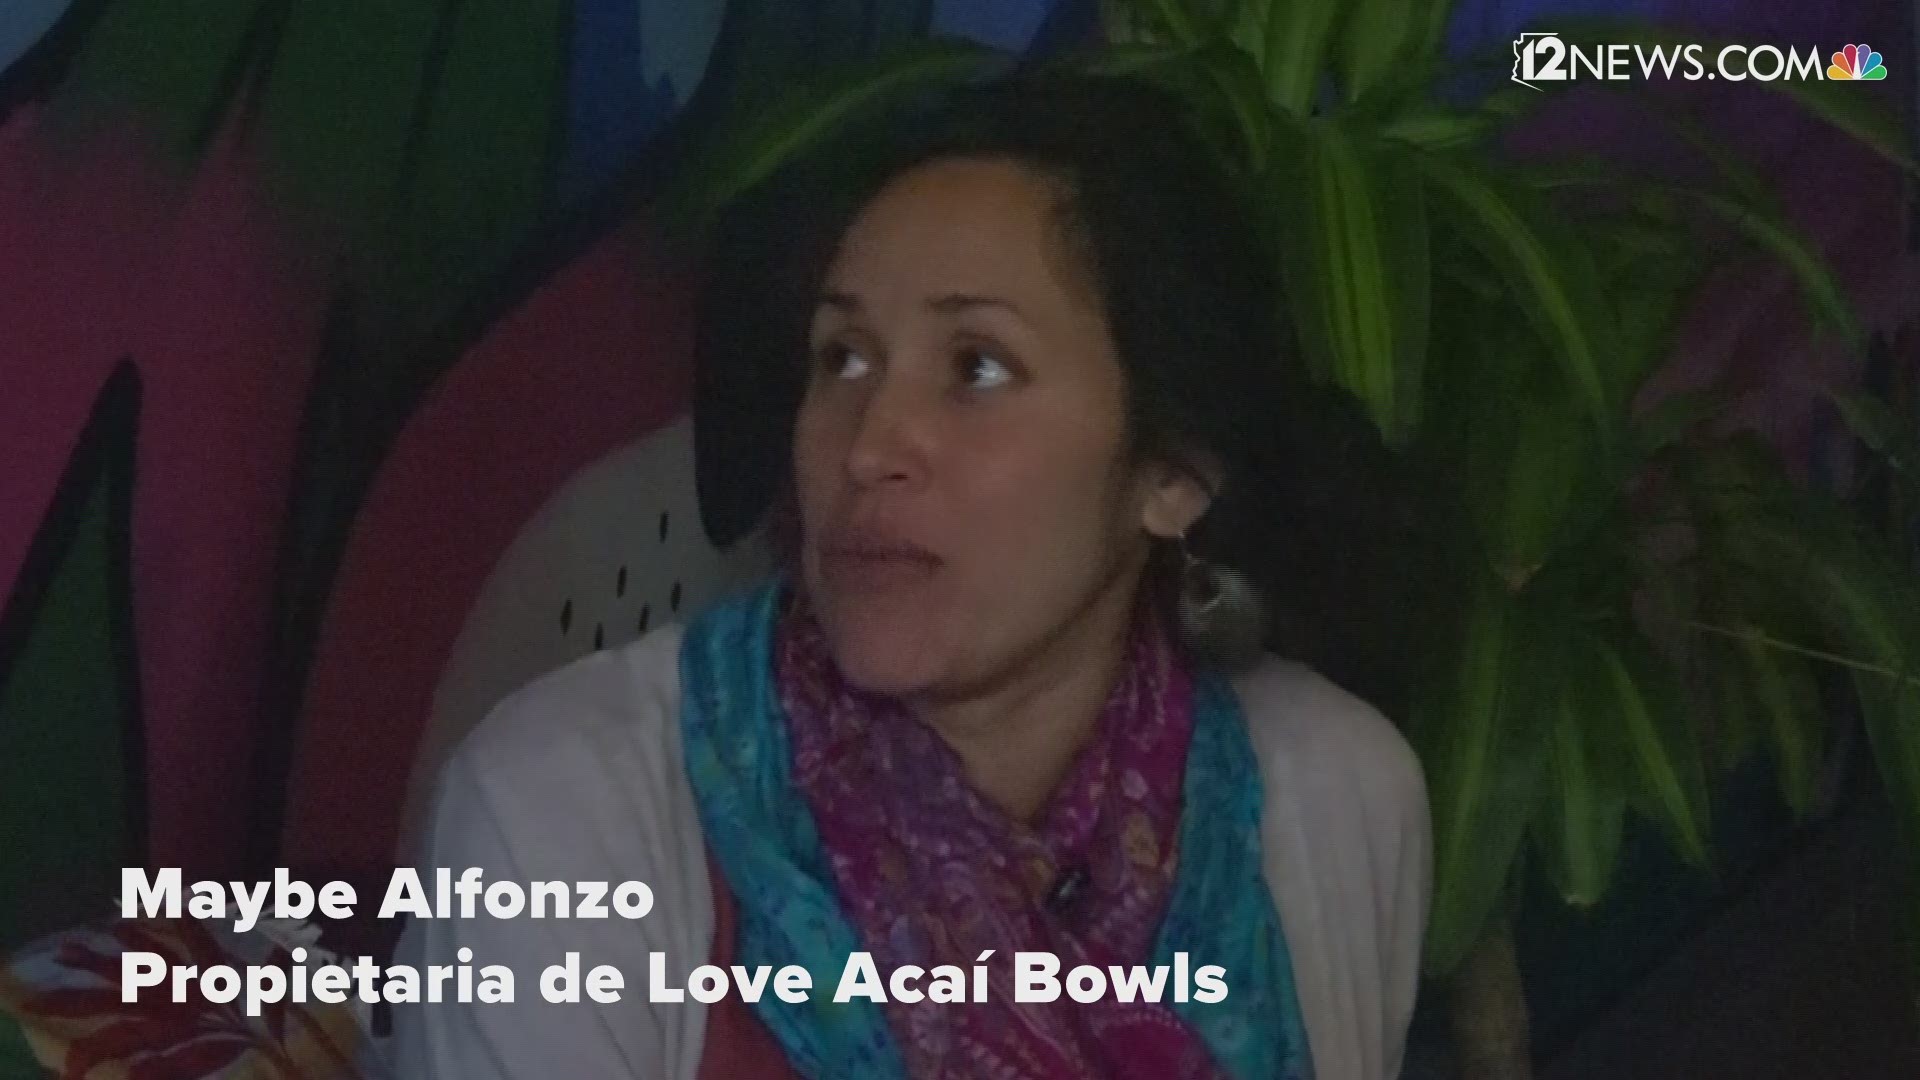 Maybe Alfonzo, propietaria de Love Acaí Bowls, explica lo que es el acaí.